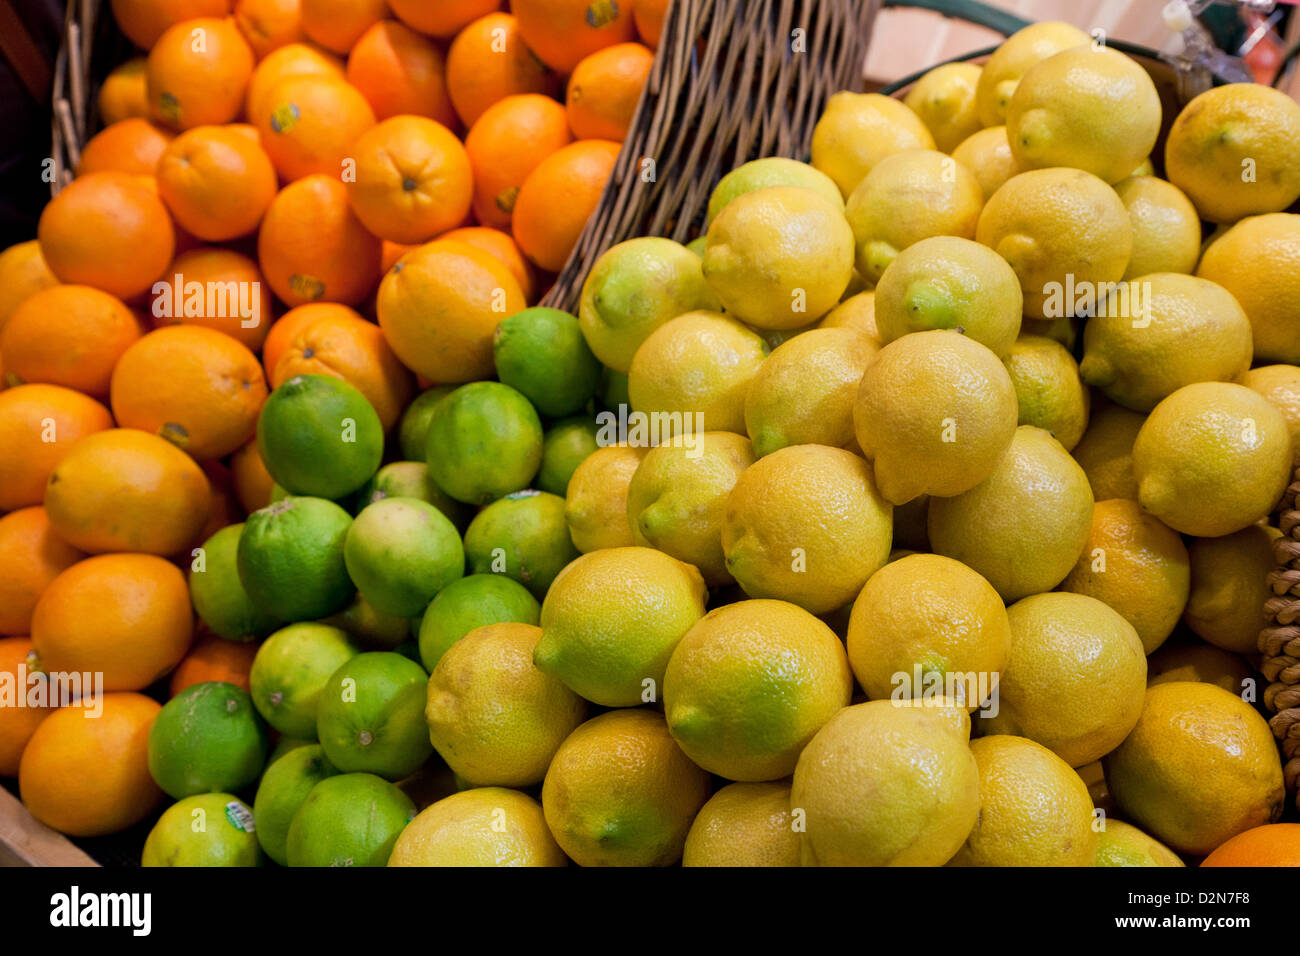 Citrons limes et oranges, Rutaceae, agrumes sur le plateau prêt à la vente sur le marché Banque D'Images